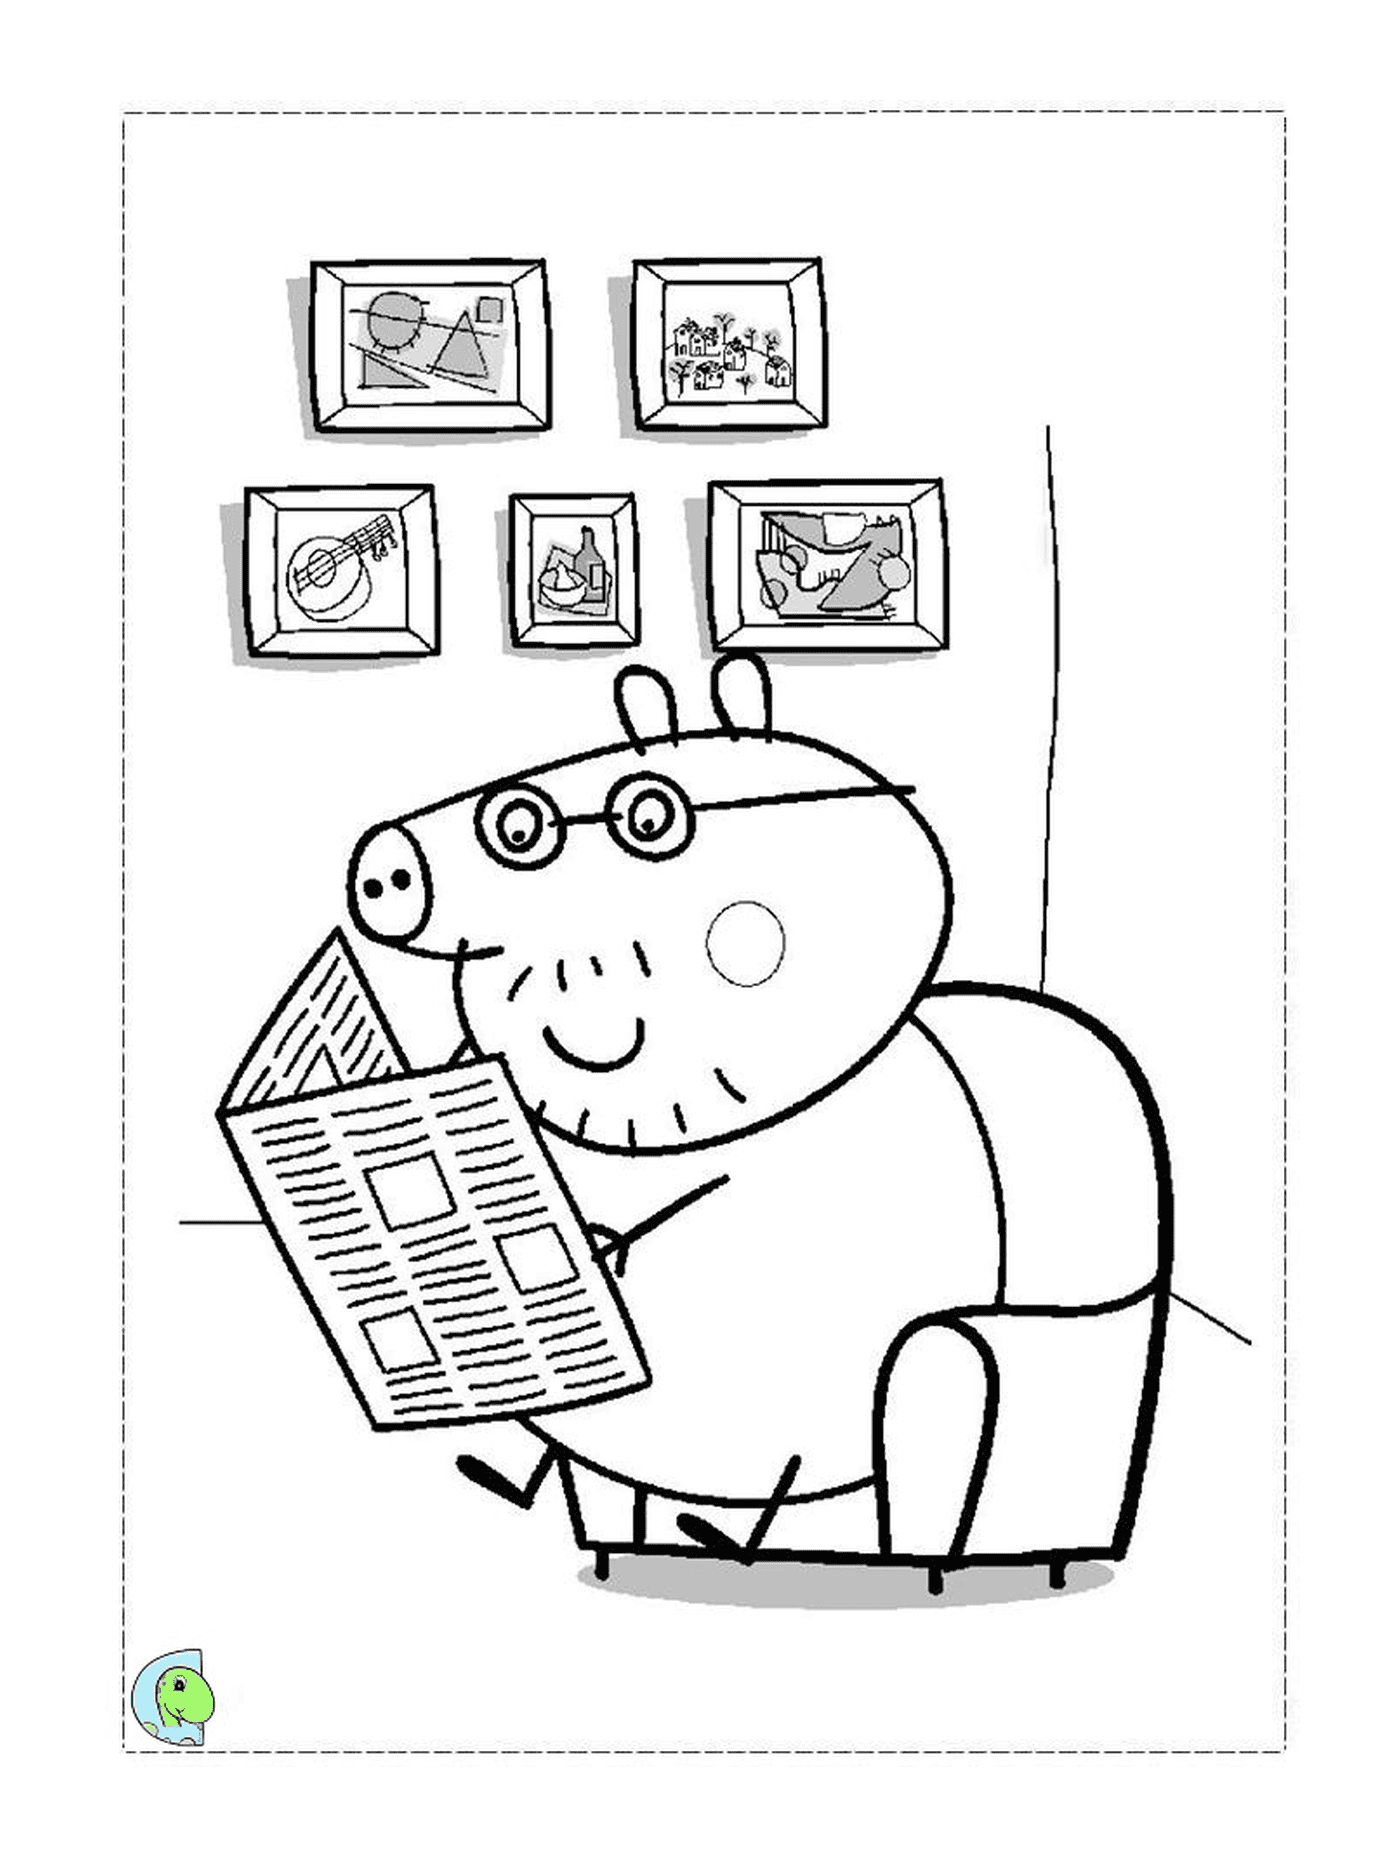  阅读报纸的Peppa 猪猪 